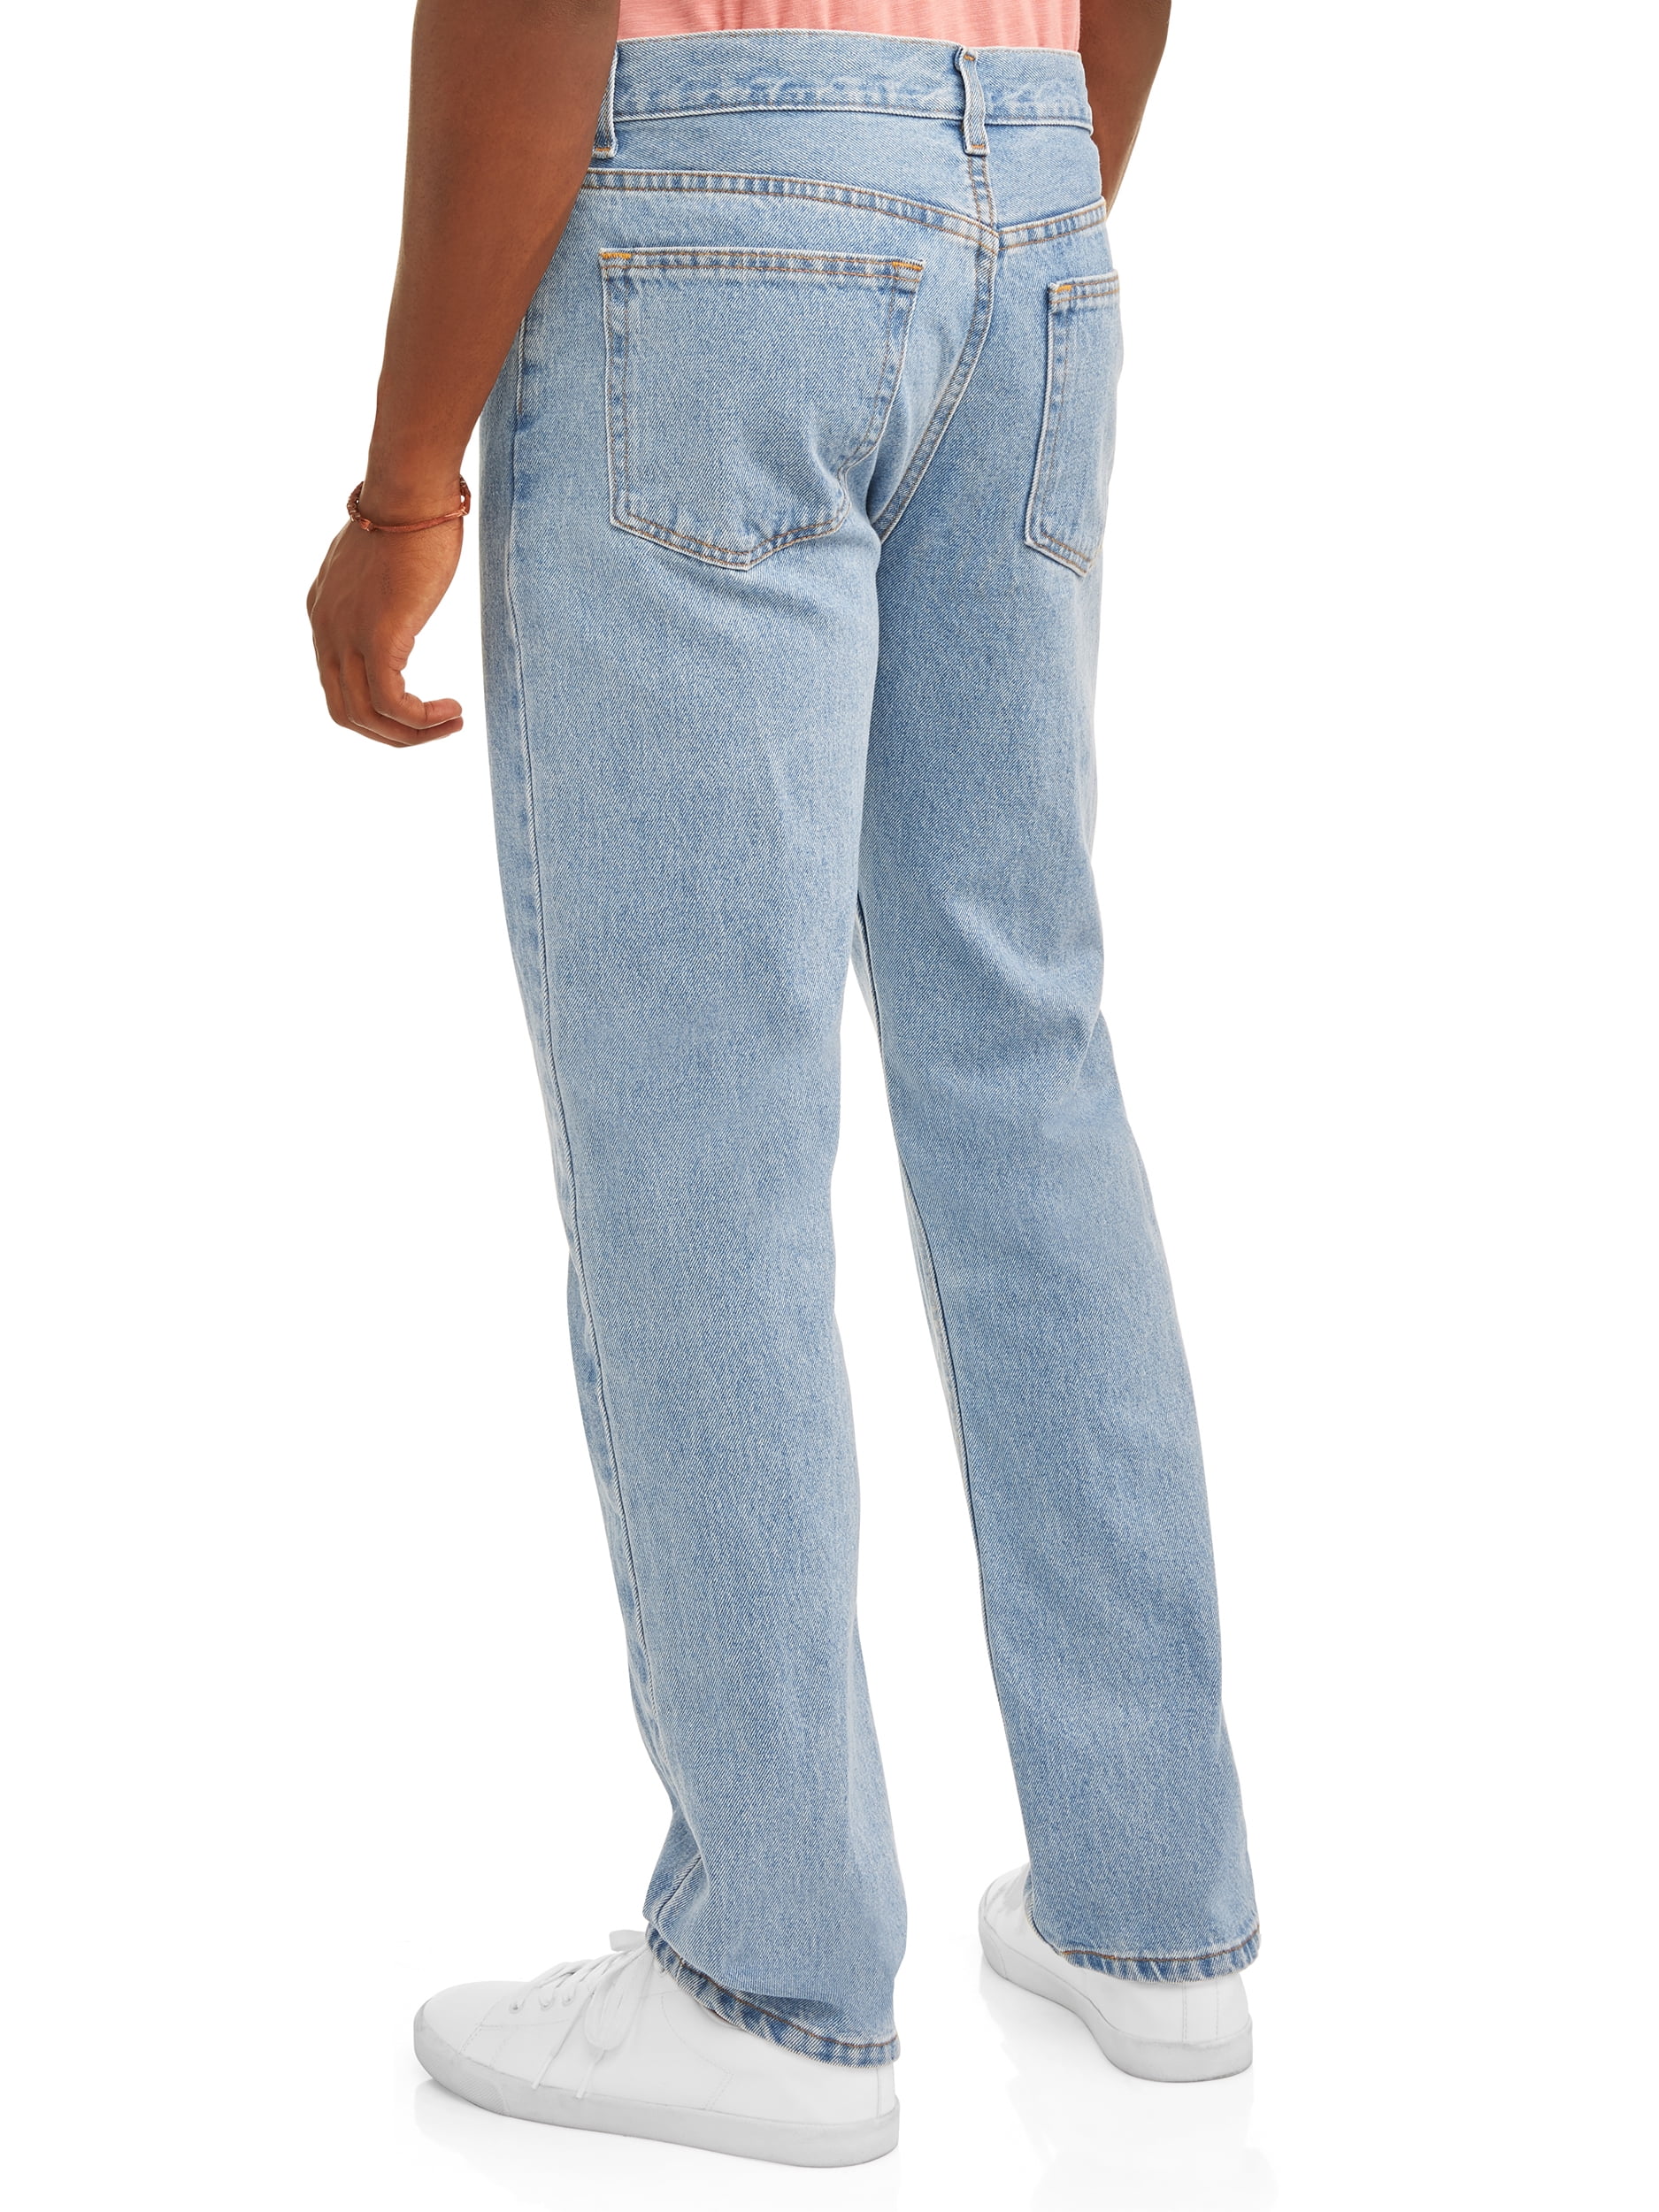 george mens jeans